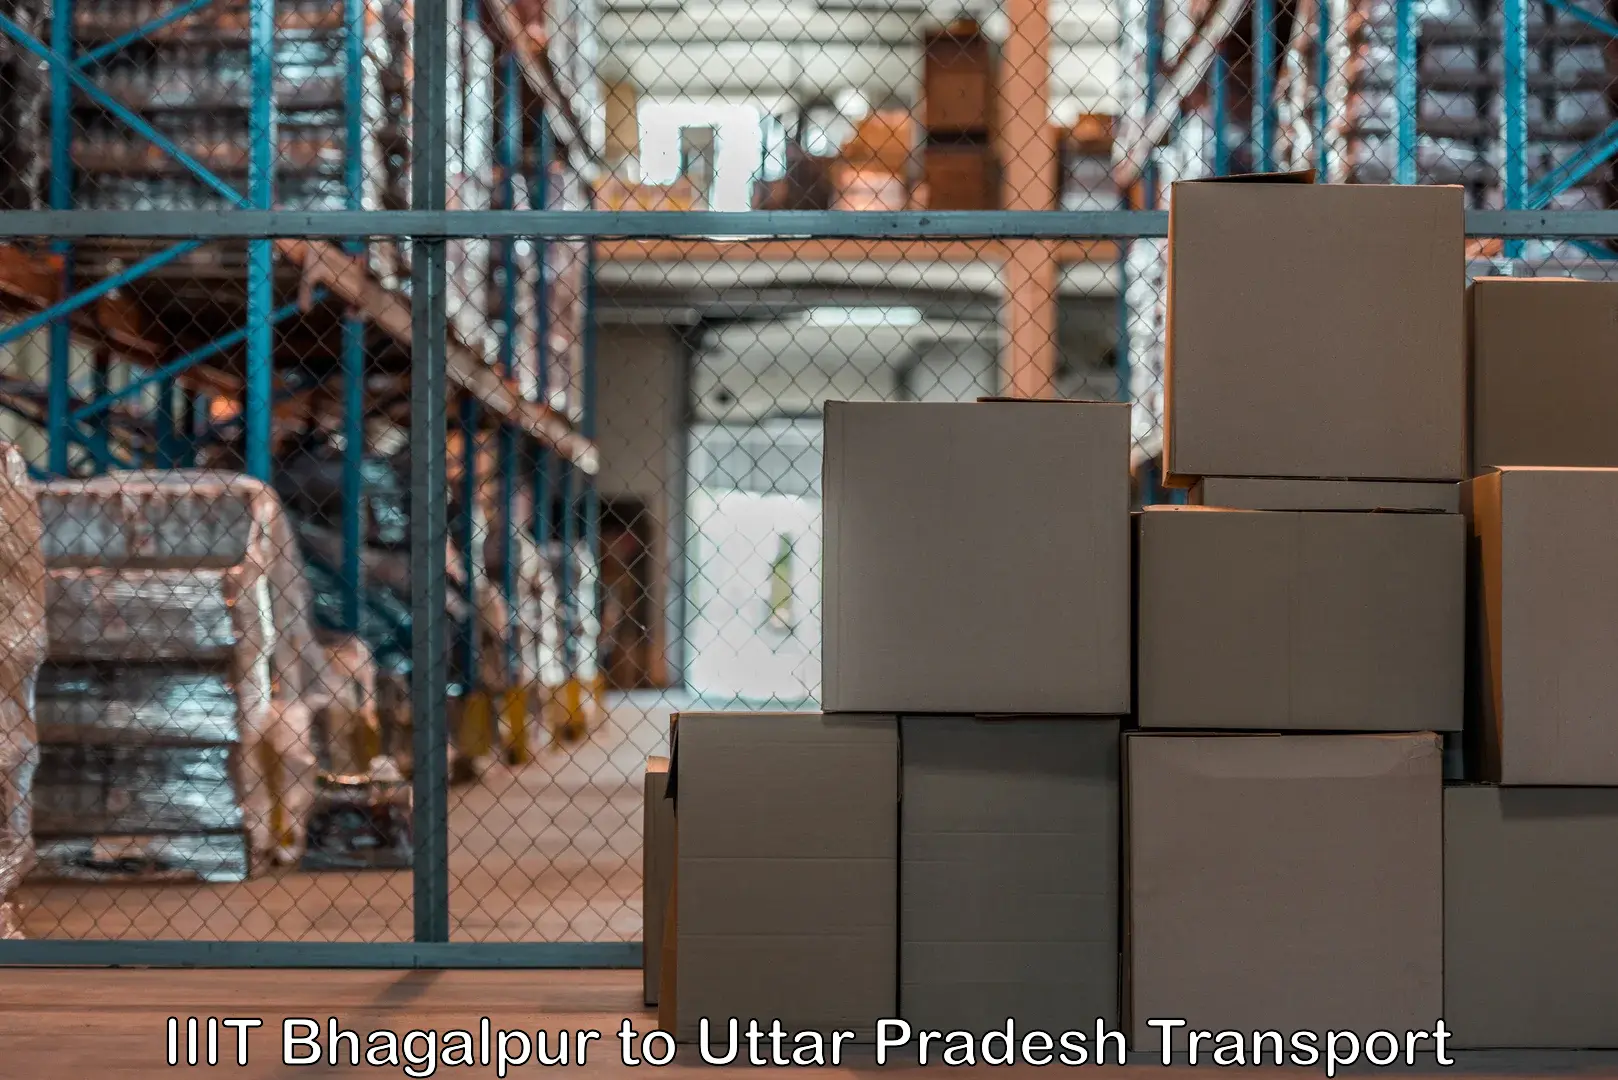 Cargo transport services IIIT Bhagalpur to Faridpur